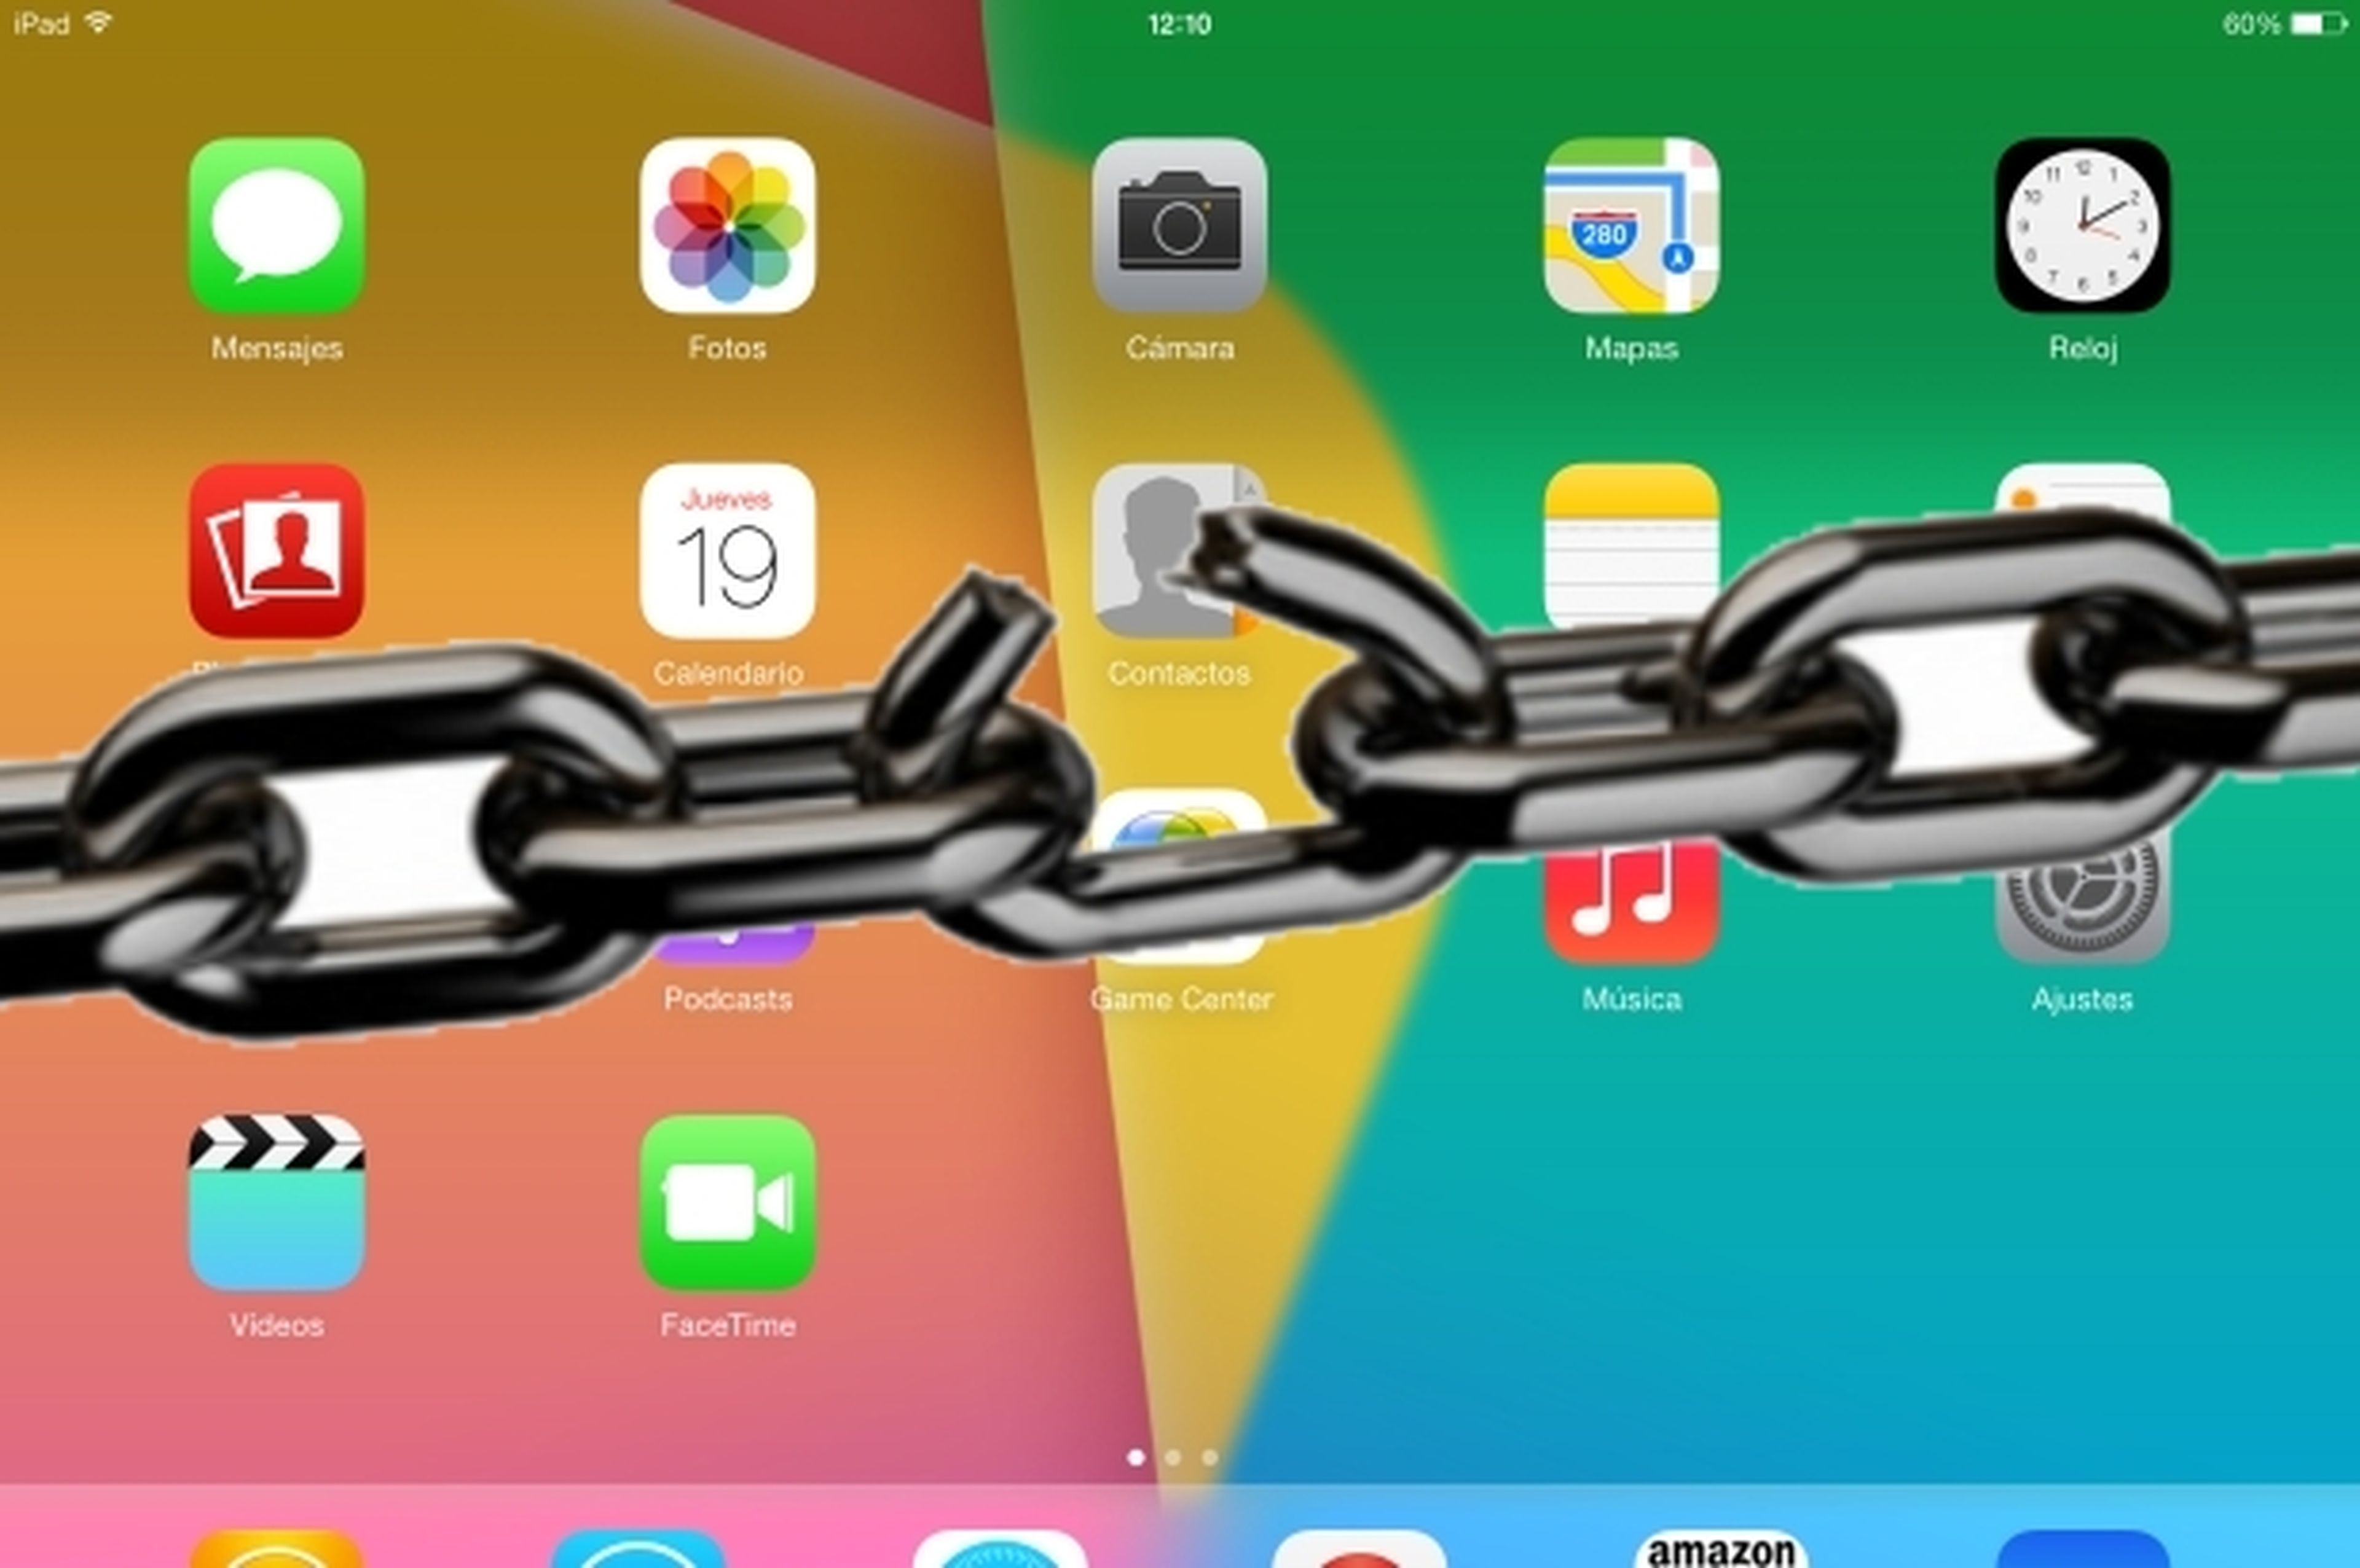 El jailbreak de iOS 7 ya está en marcha, pero aún tardará semanas